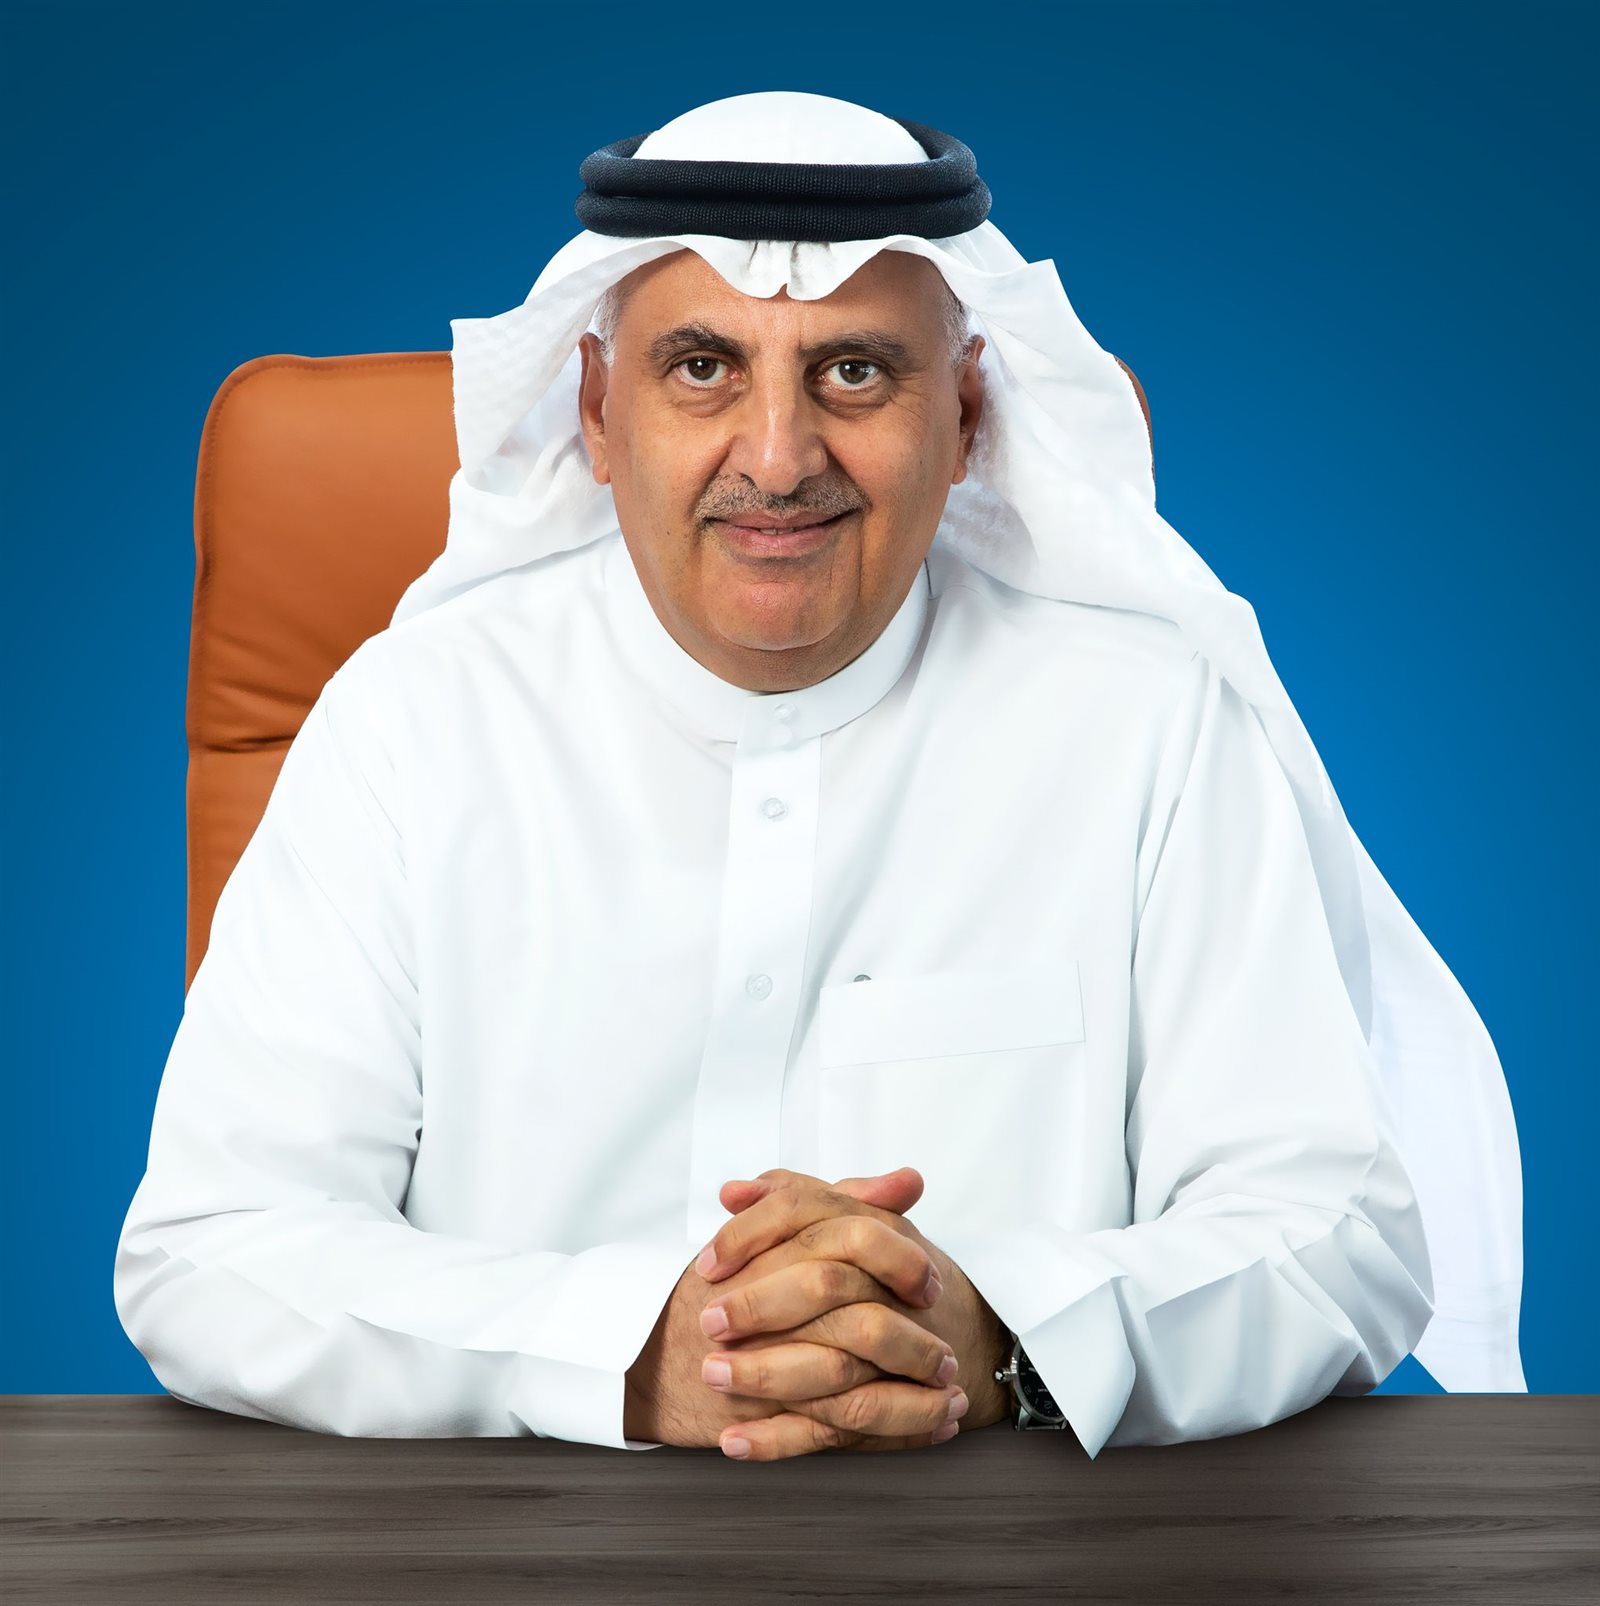 الأمين العام للاتحاد الخليجي للبتروكيماويات والكيمايات "جيبكا"، الدكتور عبدالوهاب السعدون